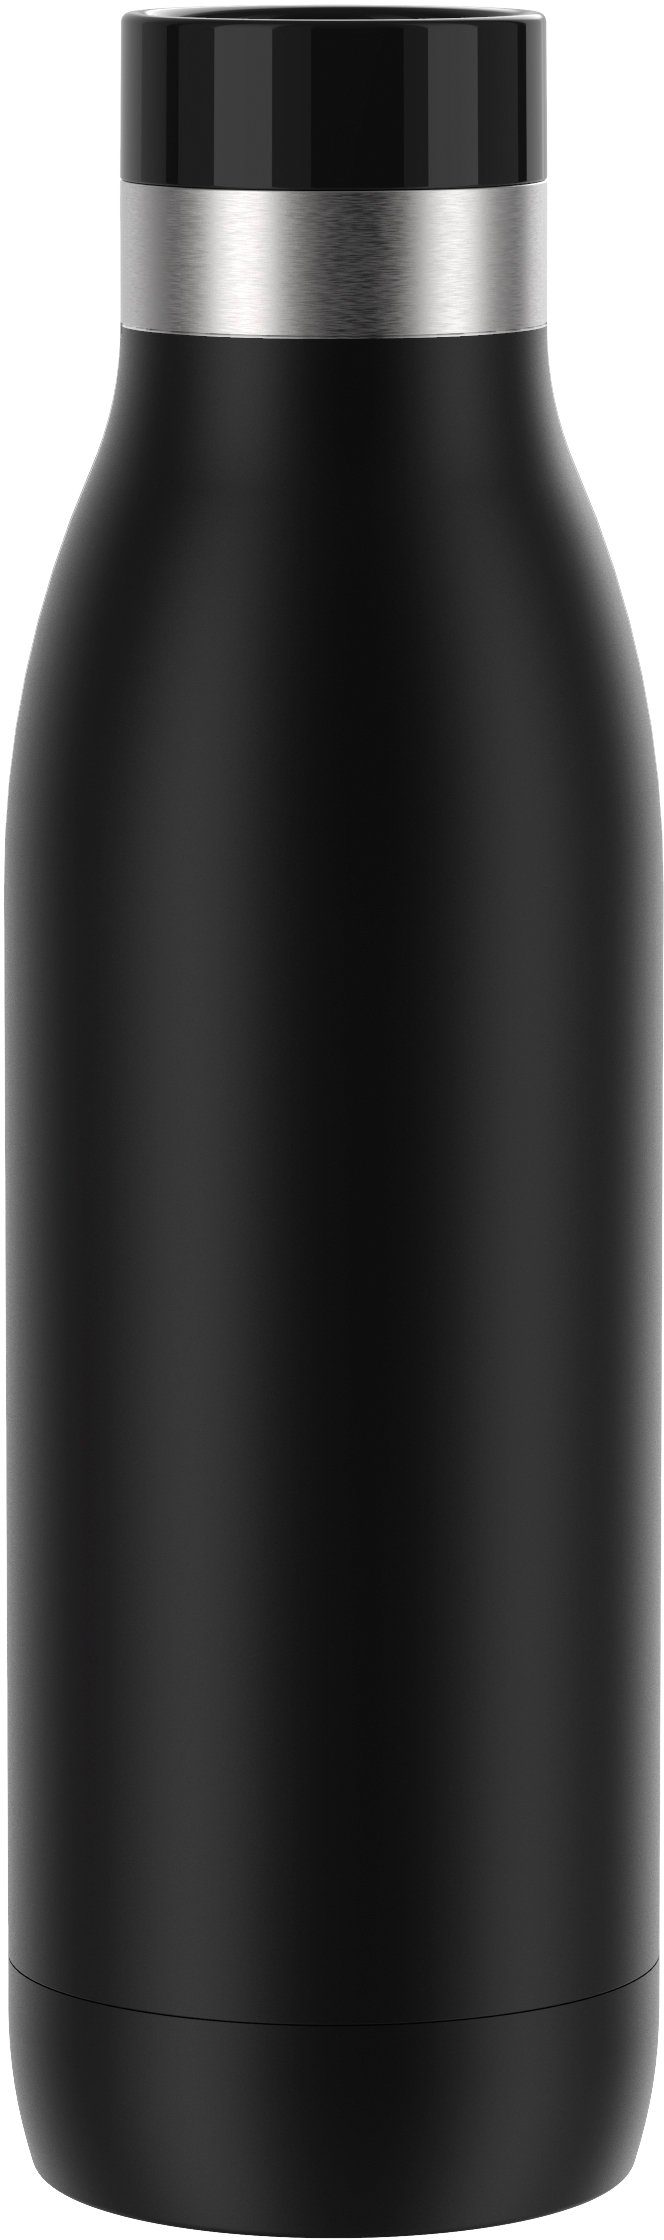 Trinkflasche Bludrop warm/24h kühl, Quick-Press Deckel, Emsa schwarz Edelstahl, spülmaschinenfest 12h Color,